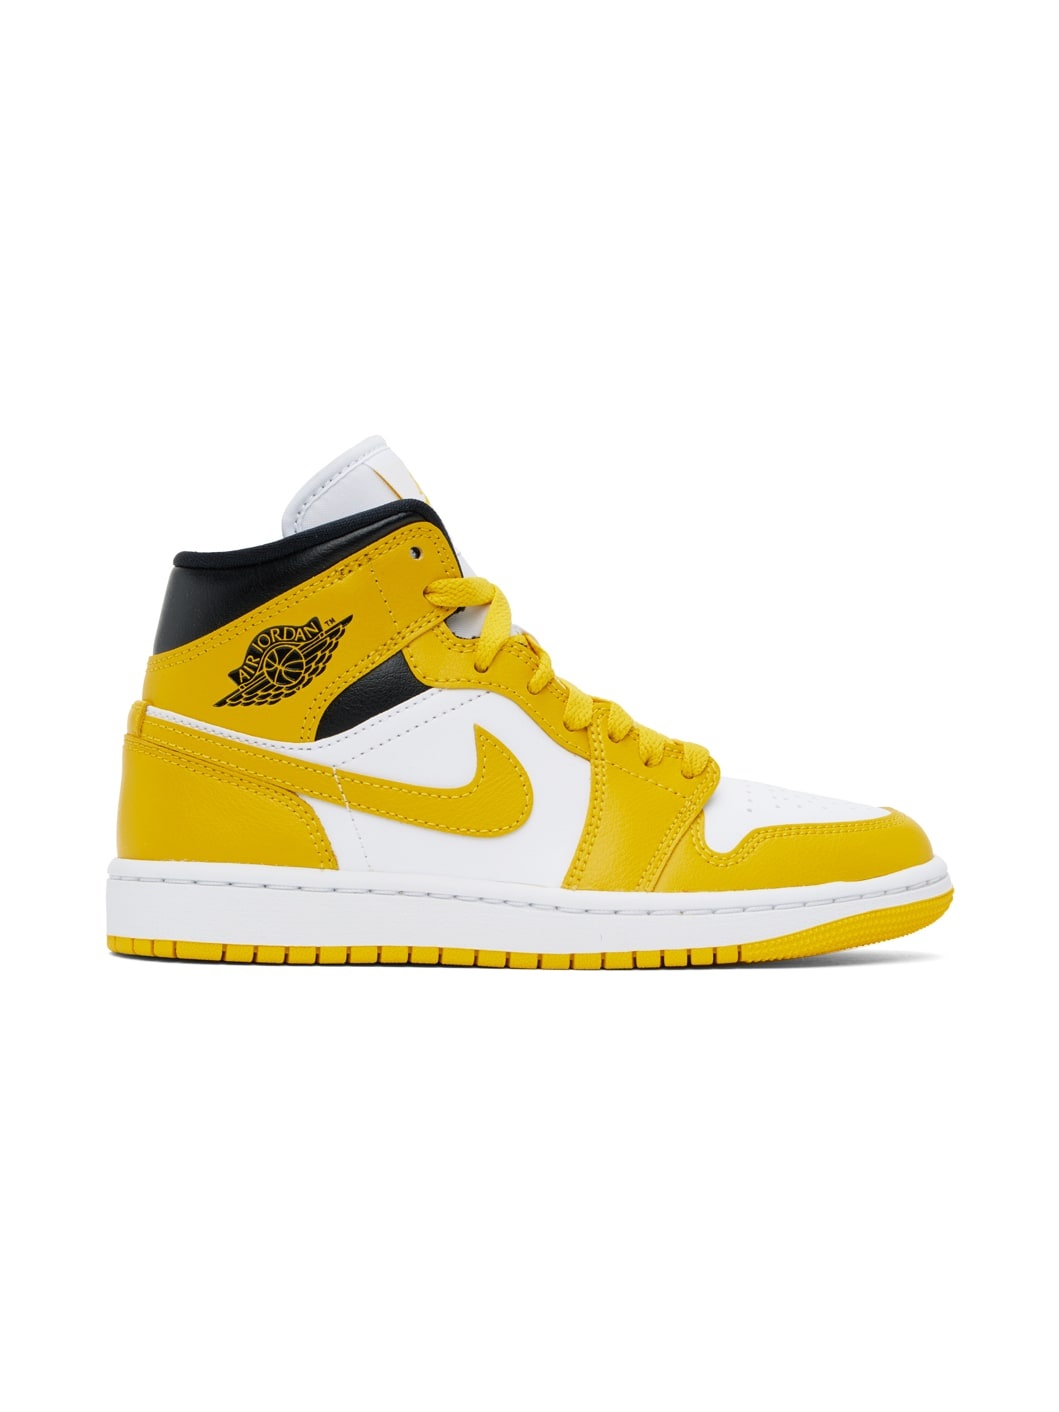 White & Yellow Air Jordan 1 Mid Sneakers - 1